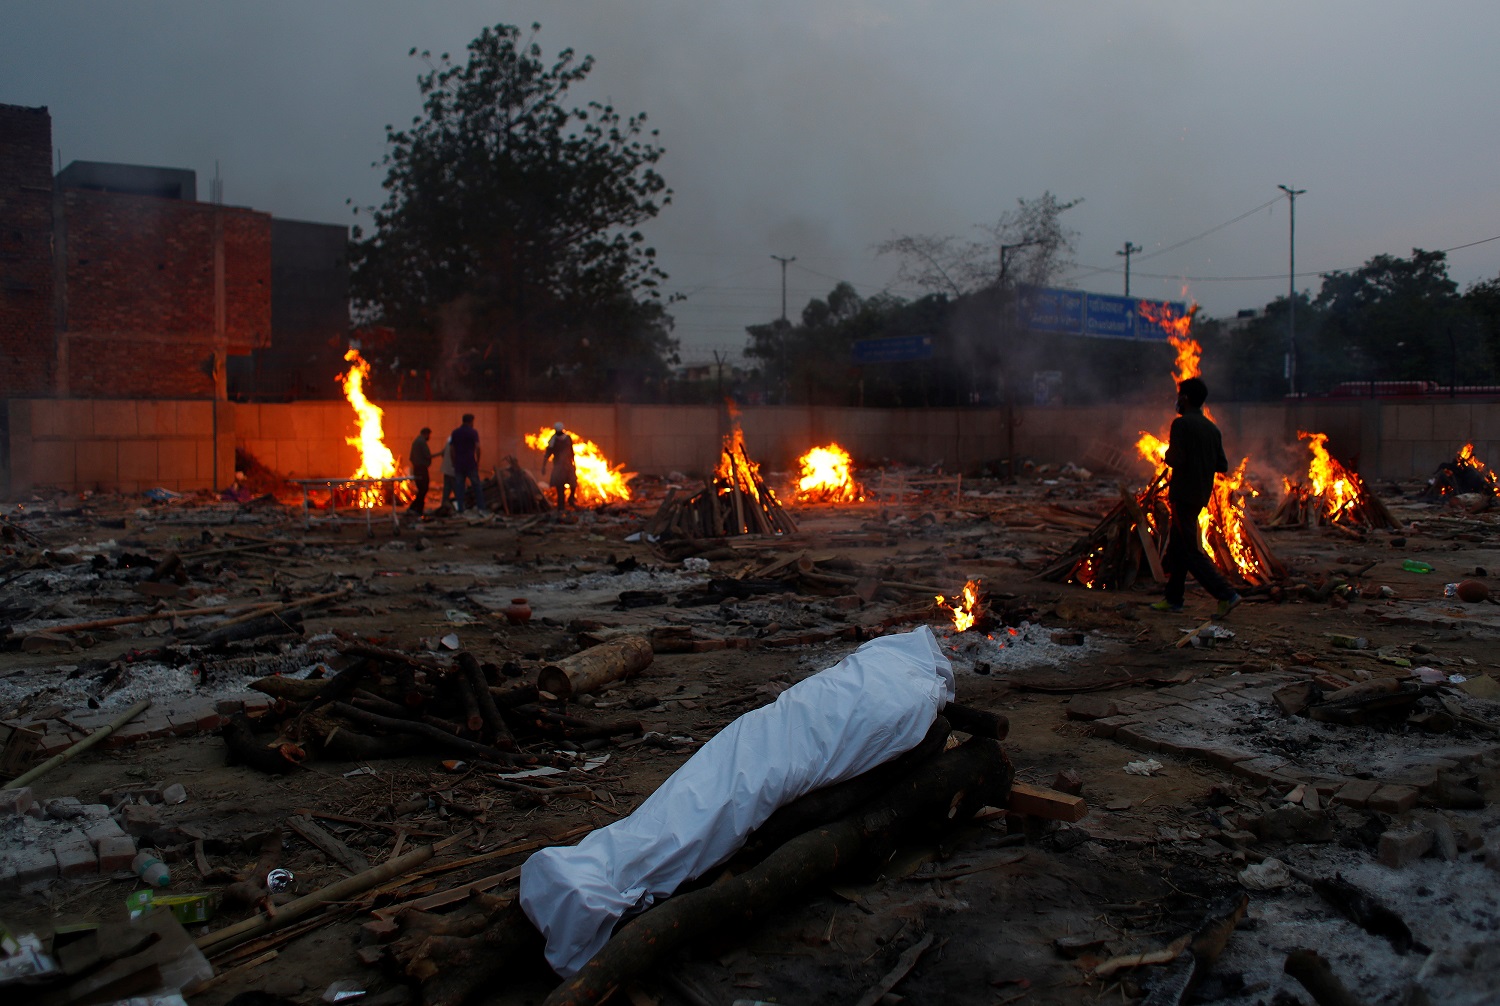 رجل يمر بجوار محرقة جنائزية لشخص مات بسبب فيروس كورونا (كوفيد -19) ، خلال حرق جماعي في محرقة جثث في نيودلهي ، الهند ، 1 مايو/أيار 2021. (رويترز / عدنان عبيدي)